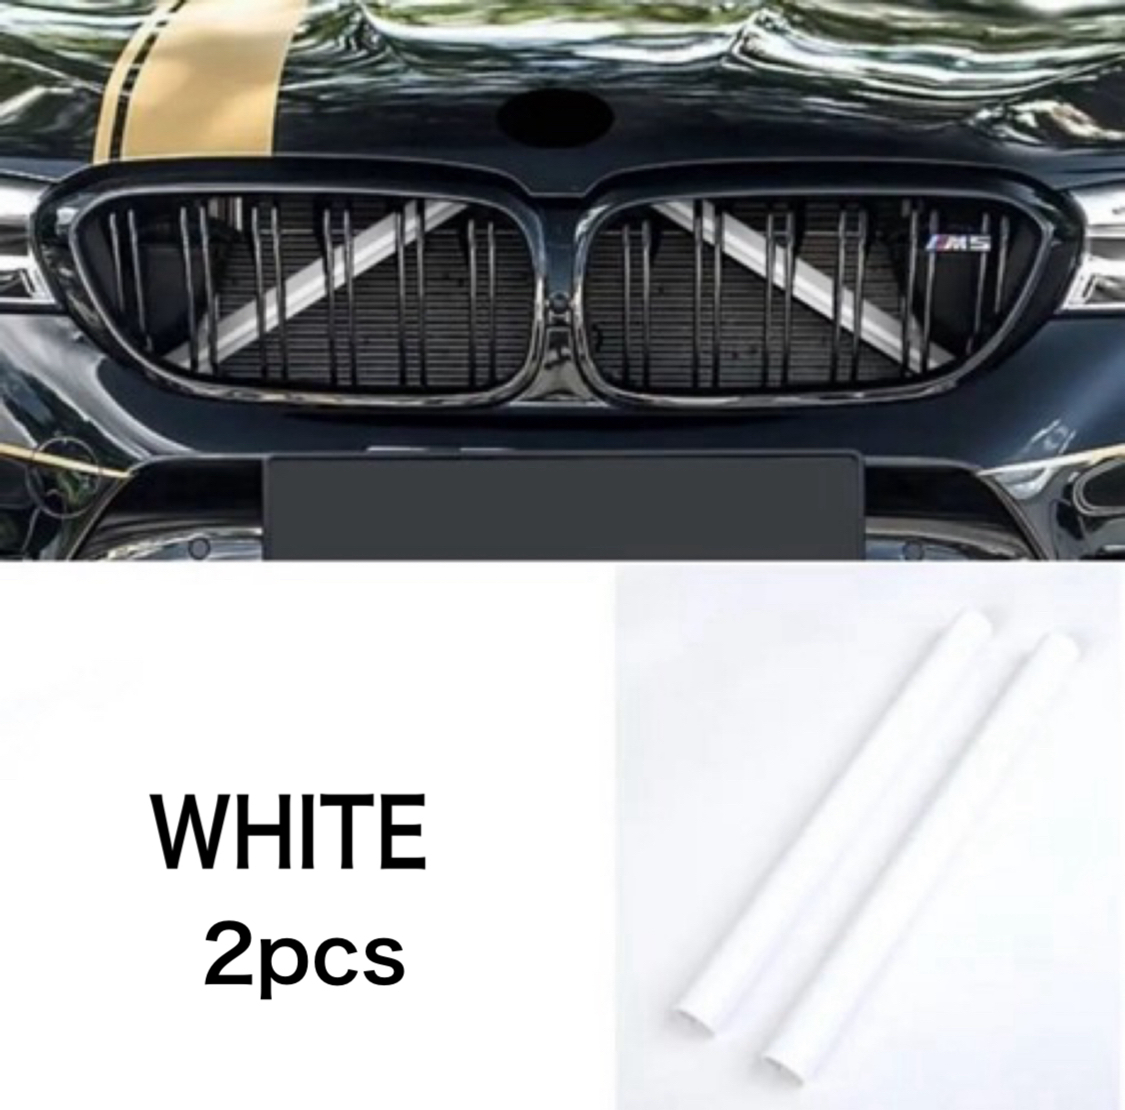 デザイン性UP♪ BMW フロントグリル 補強バー カバー 白 F44 218i 218d M235i xDrive グランクーペ プレイ 2シリーズ_画像1